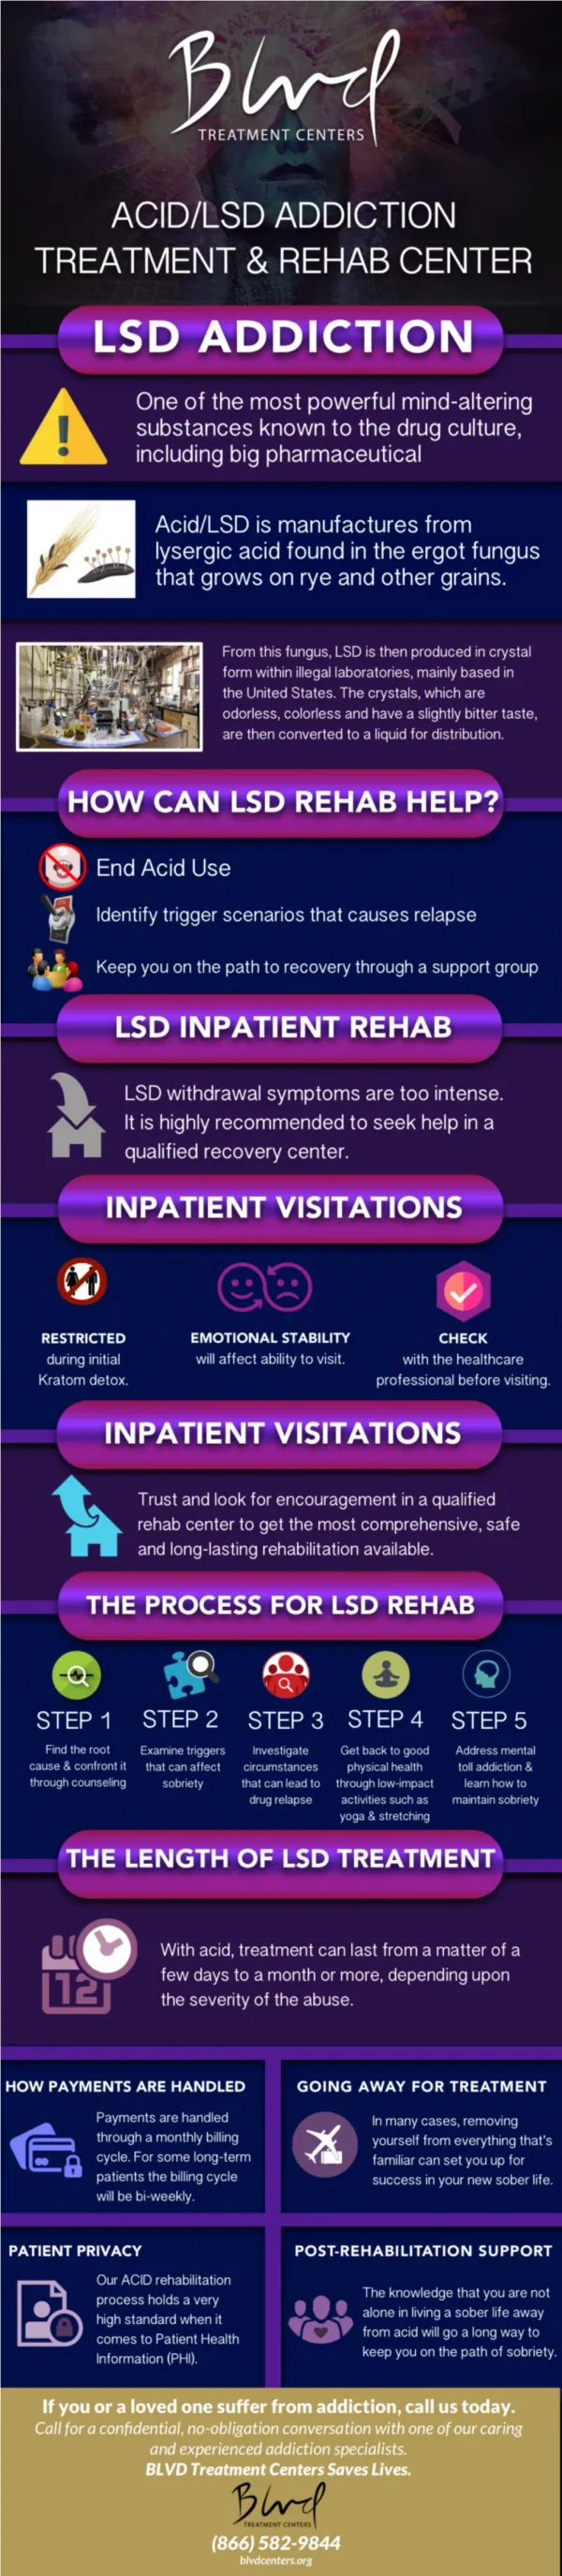 ACID/LSD Addiction Treatment and Rehab Center